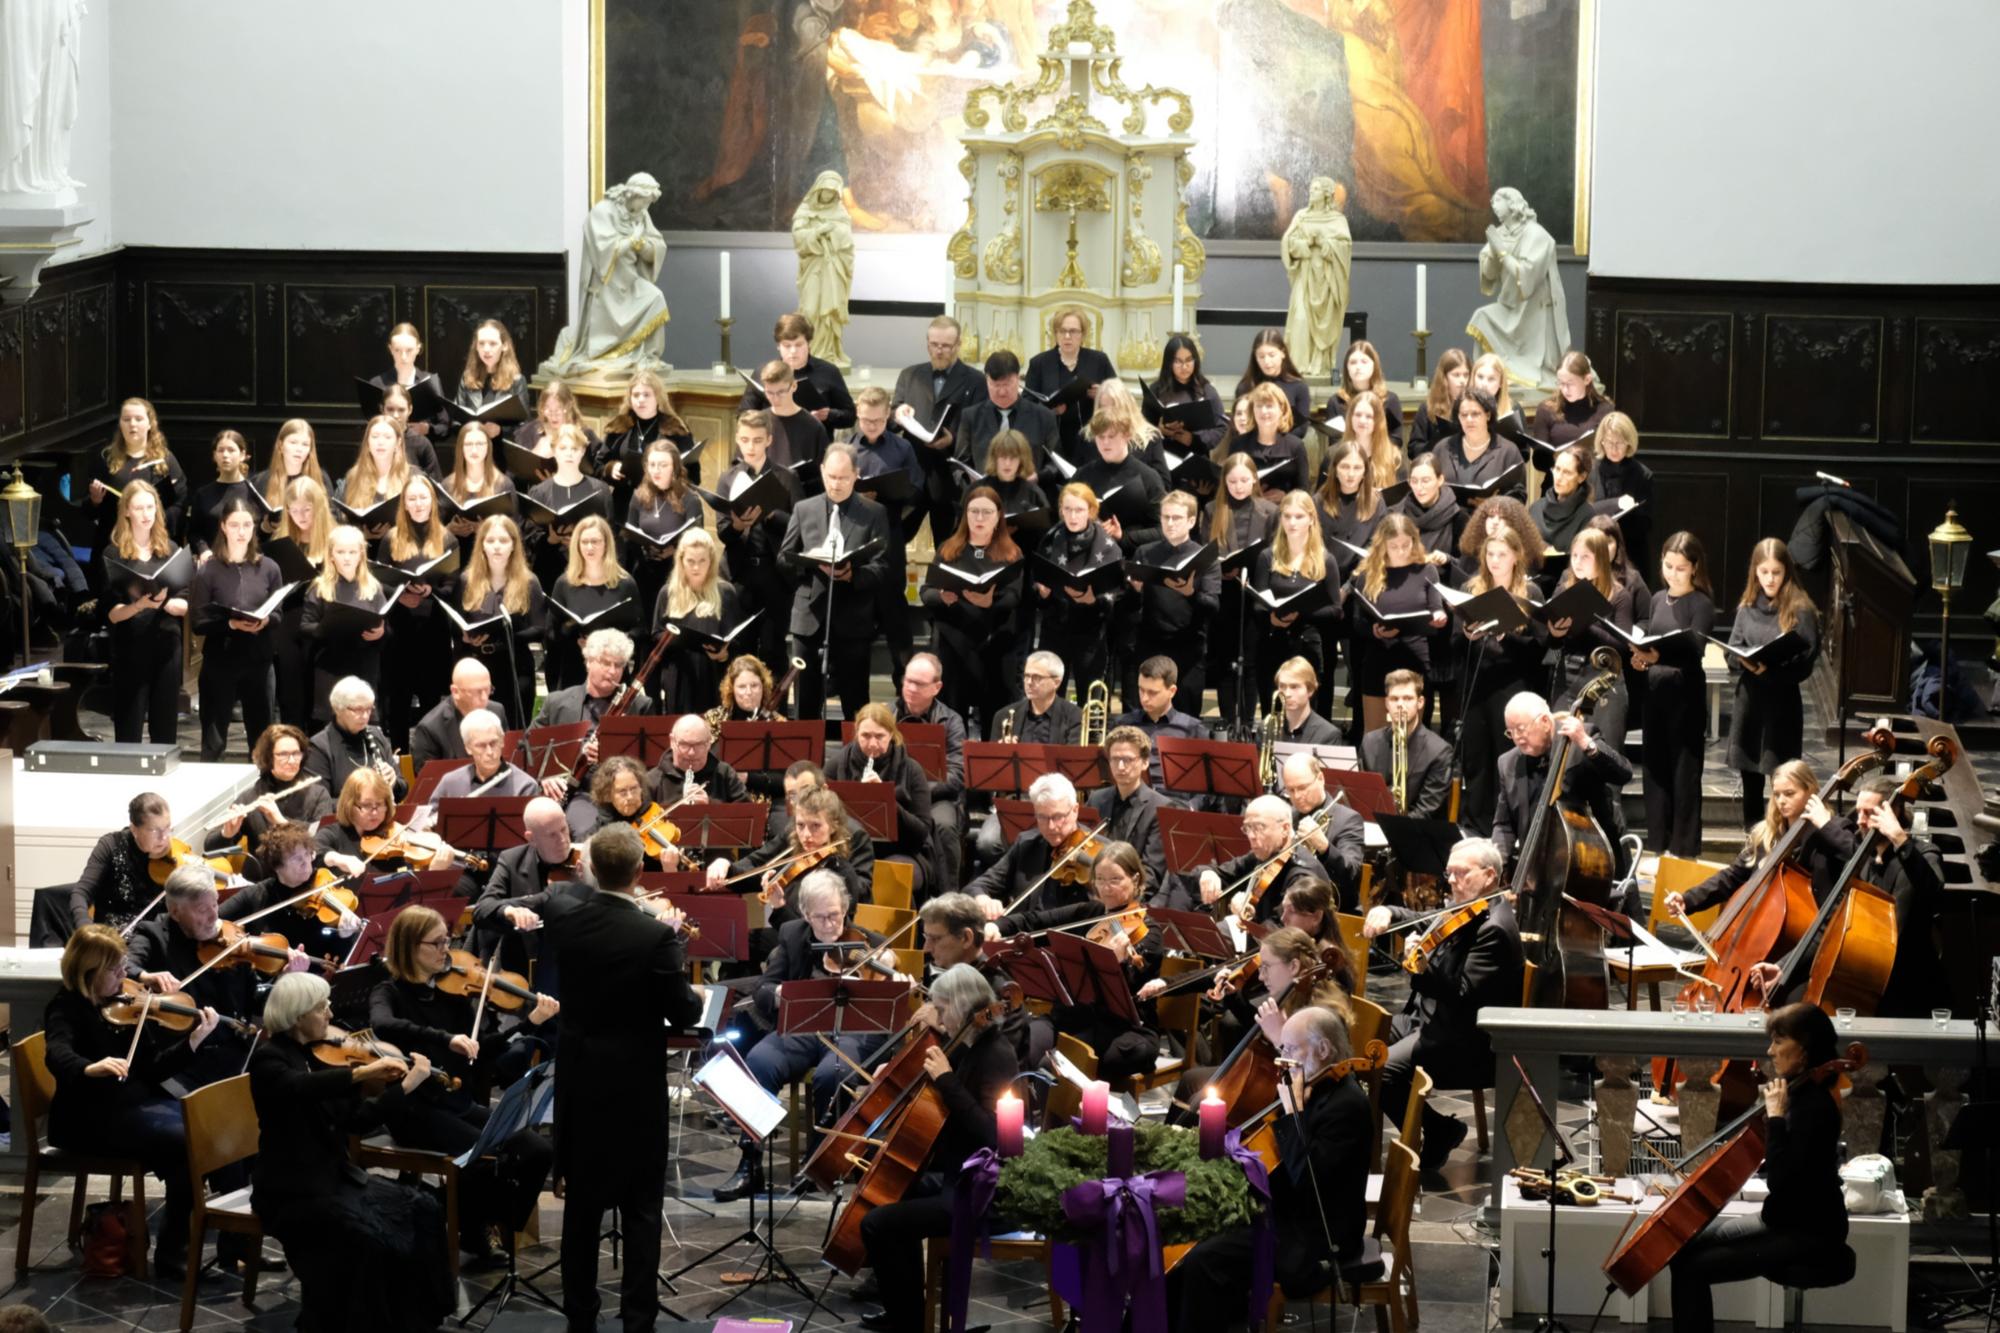 Kammerchor St. Ursula und Sinfonietta Regio (St. Maria Himmelfahrt, Geilenkirchen)